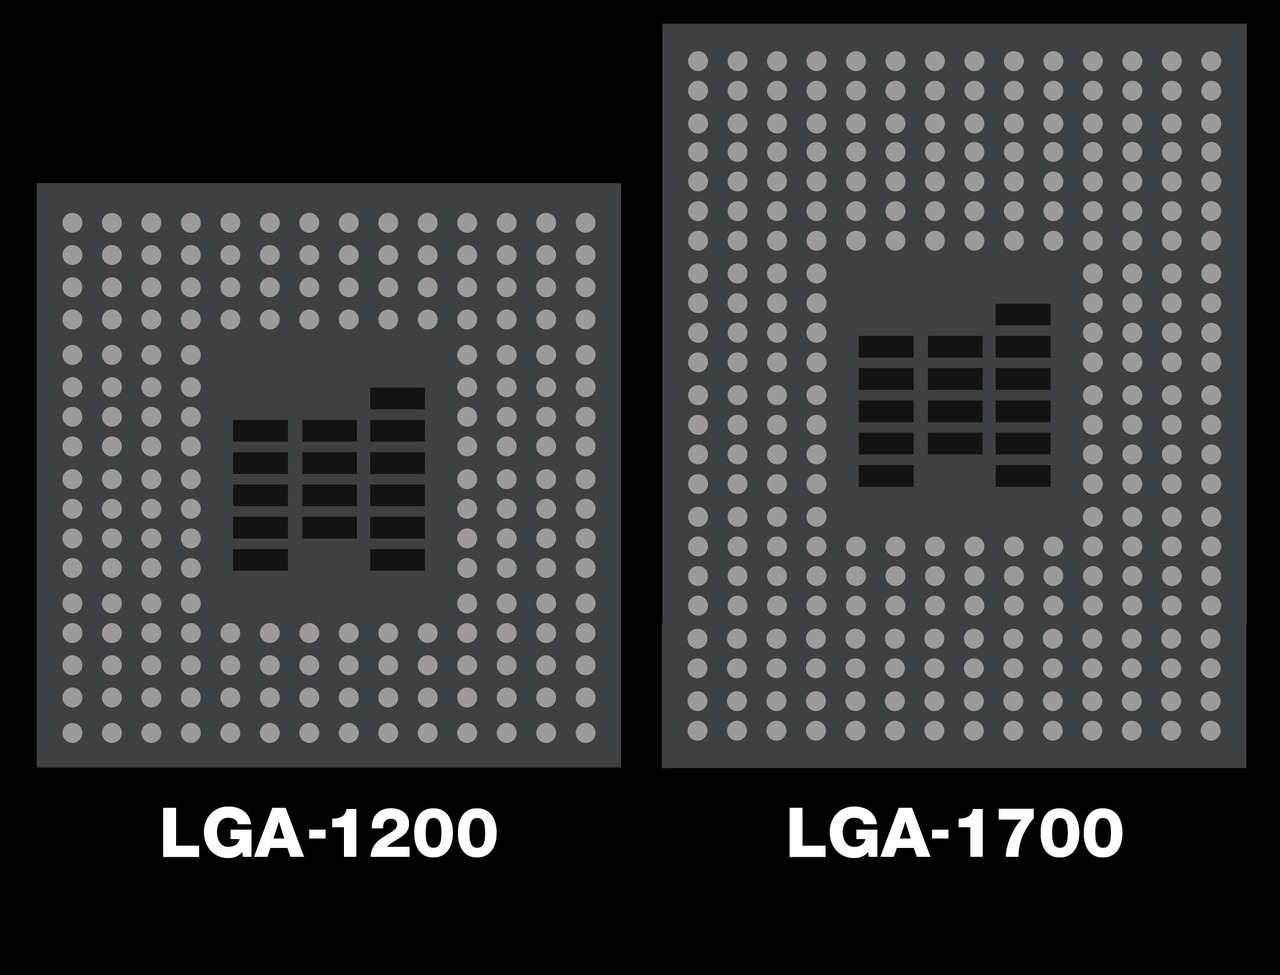 LGA-1700